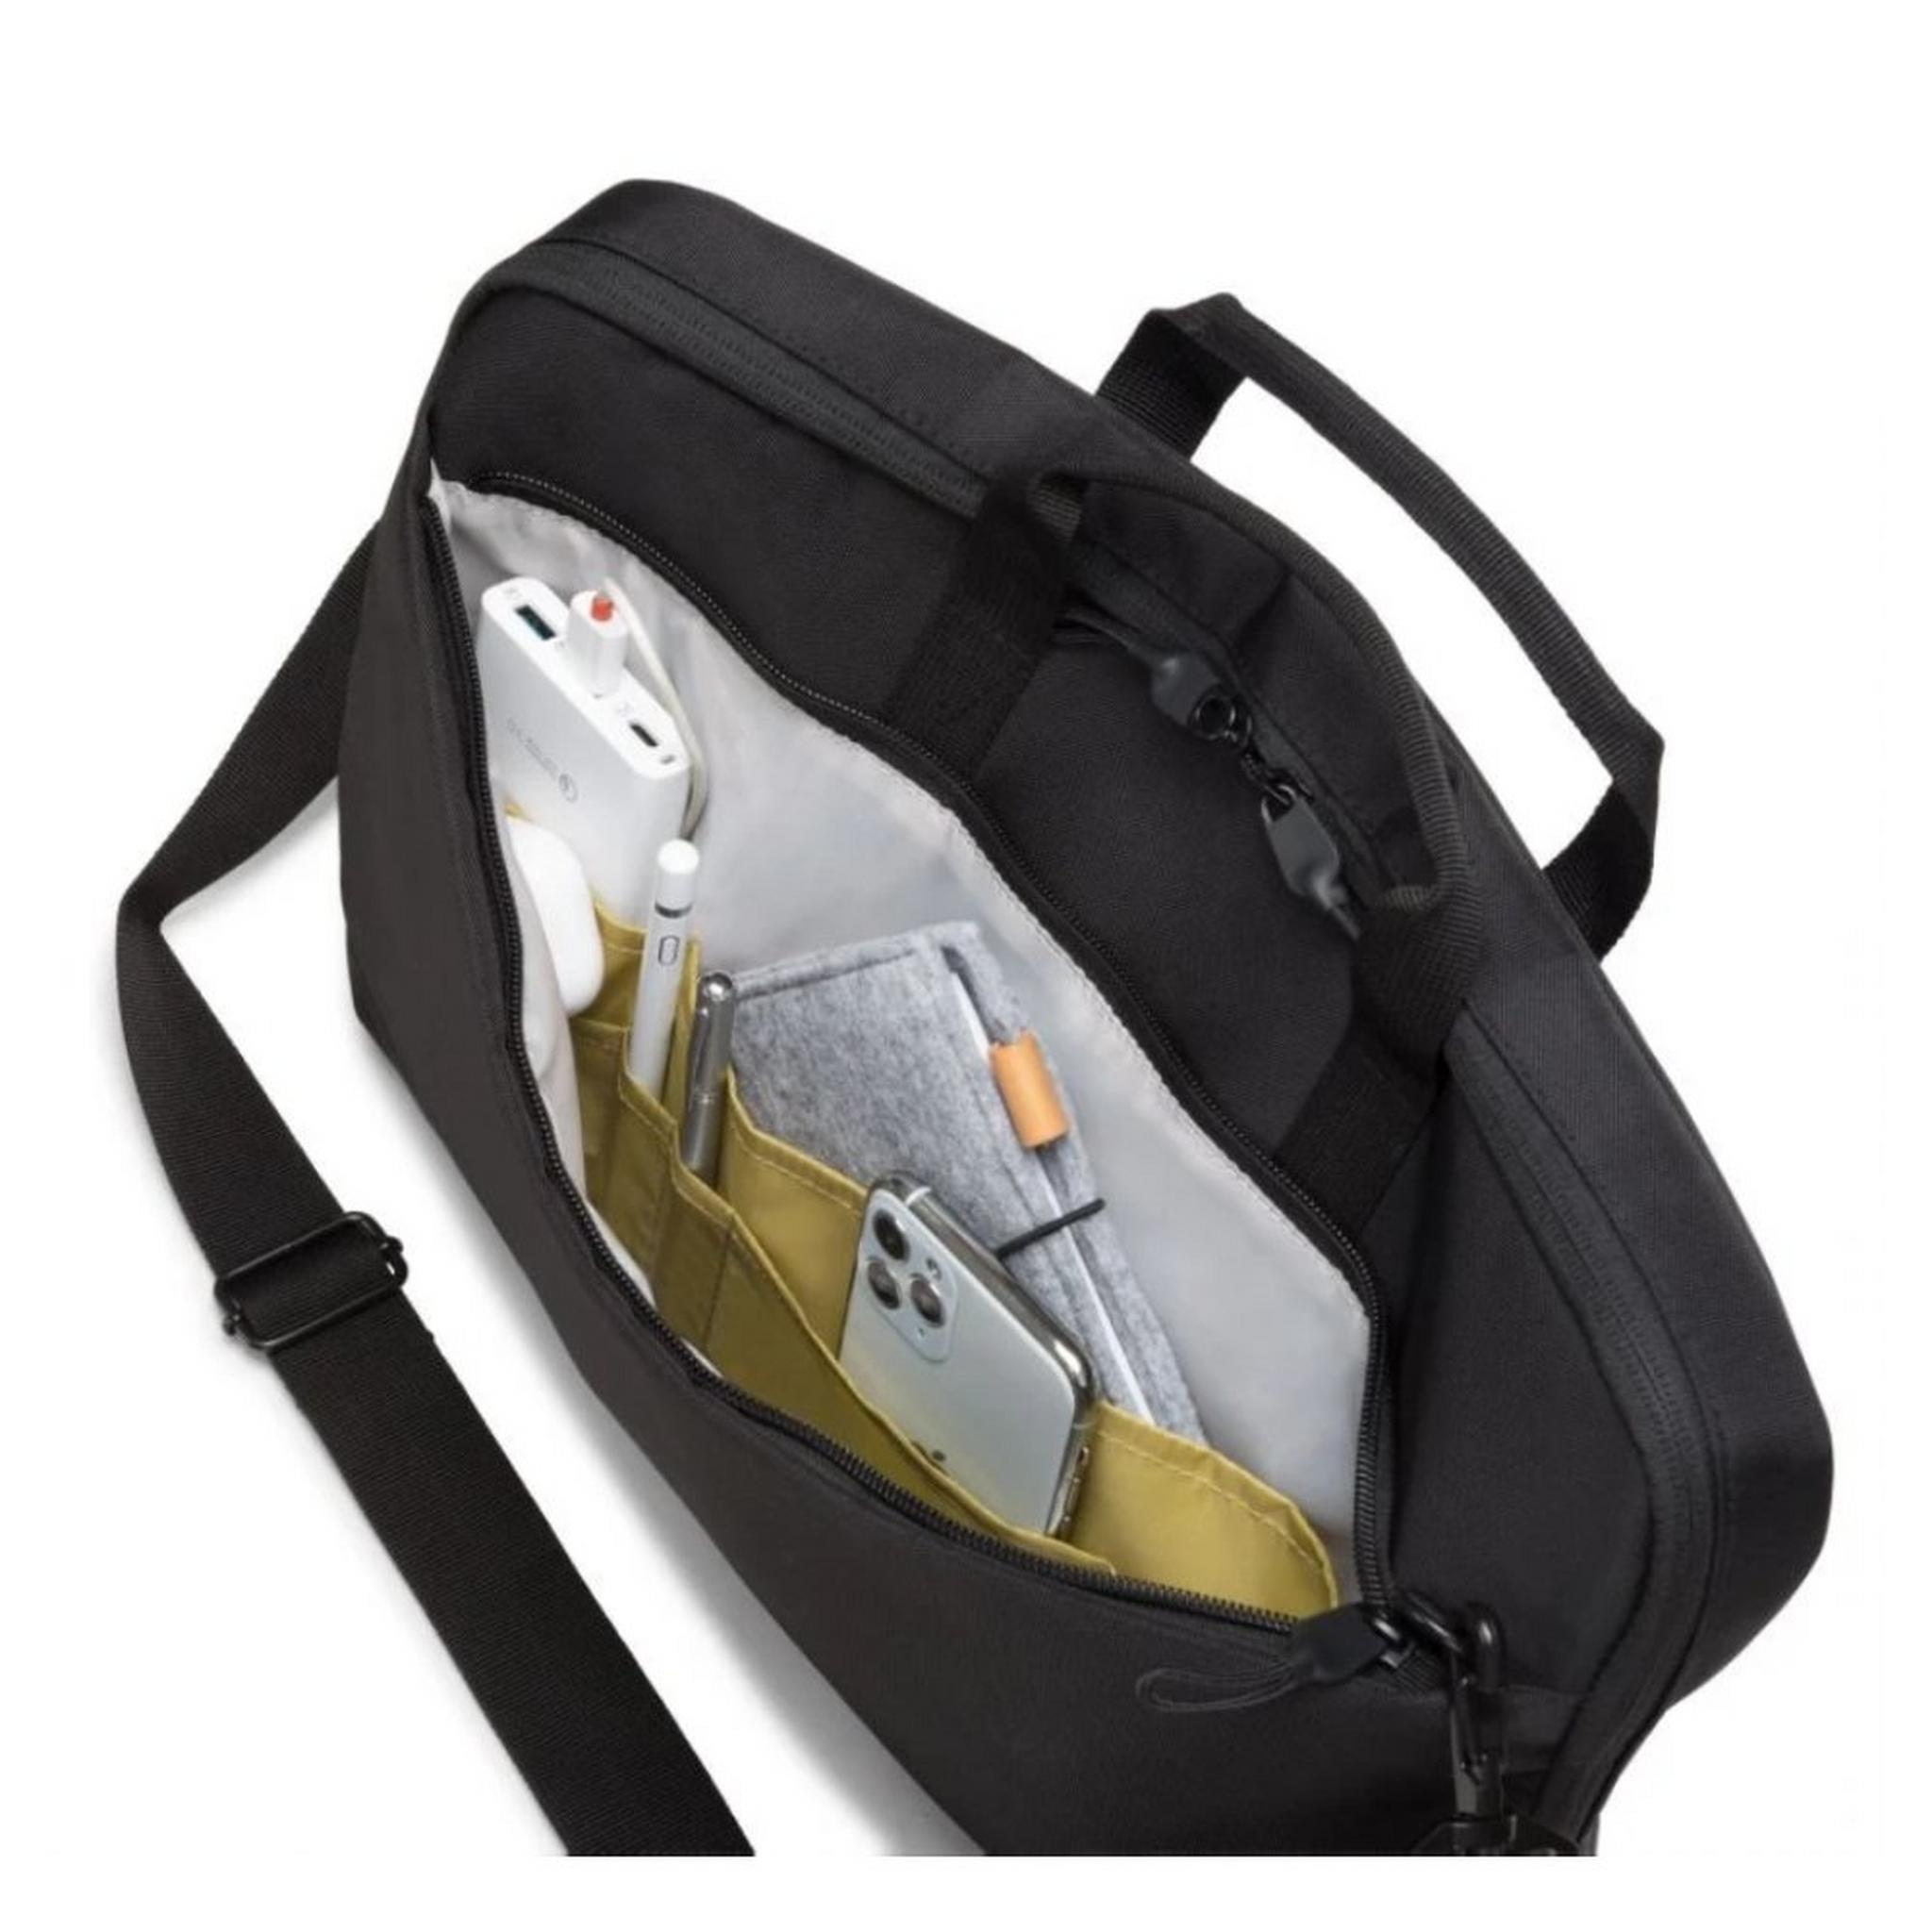 حقيبة ايكو سليم موشن للابتوب بحجم 15.6 بوصة من ديكوتا - أسود